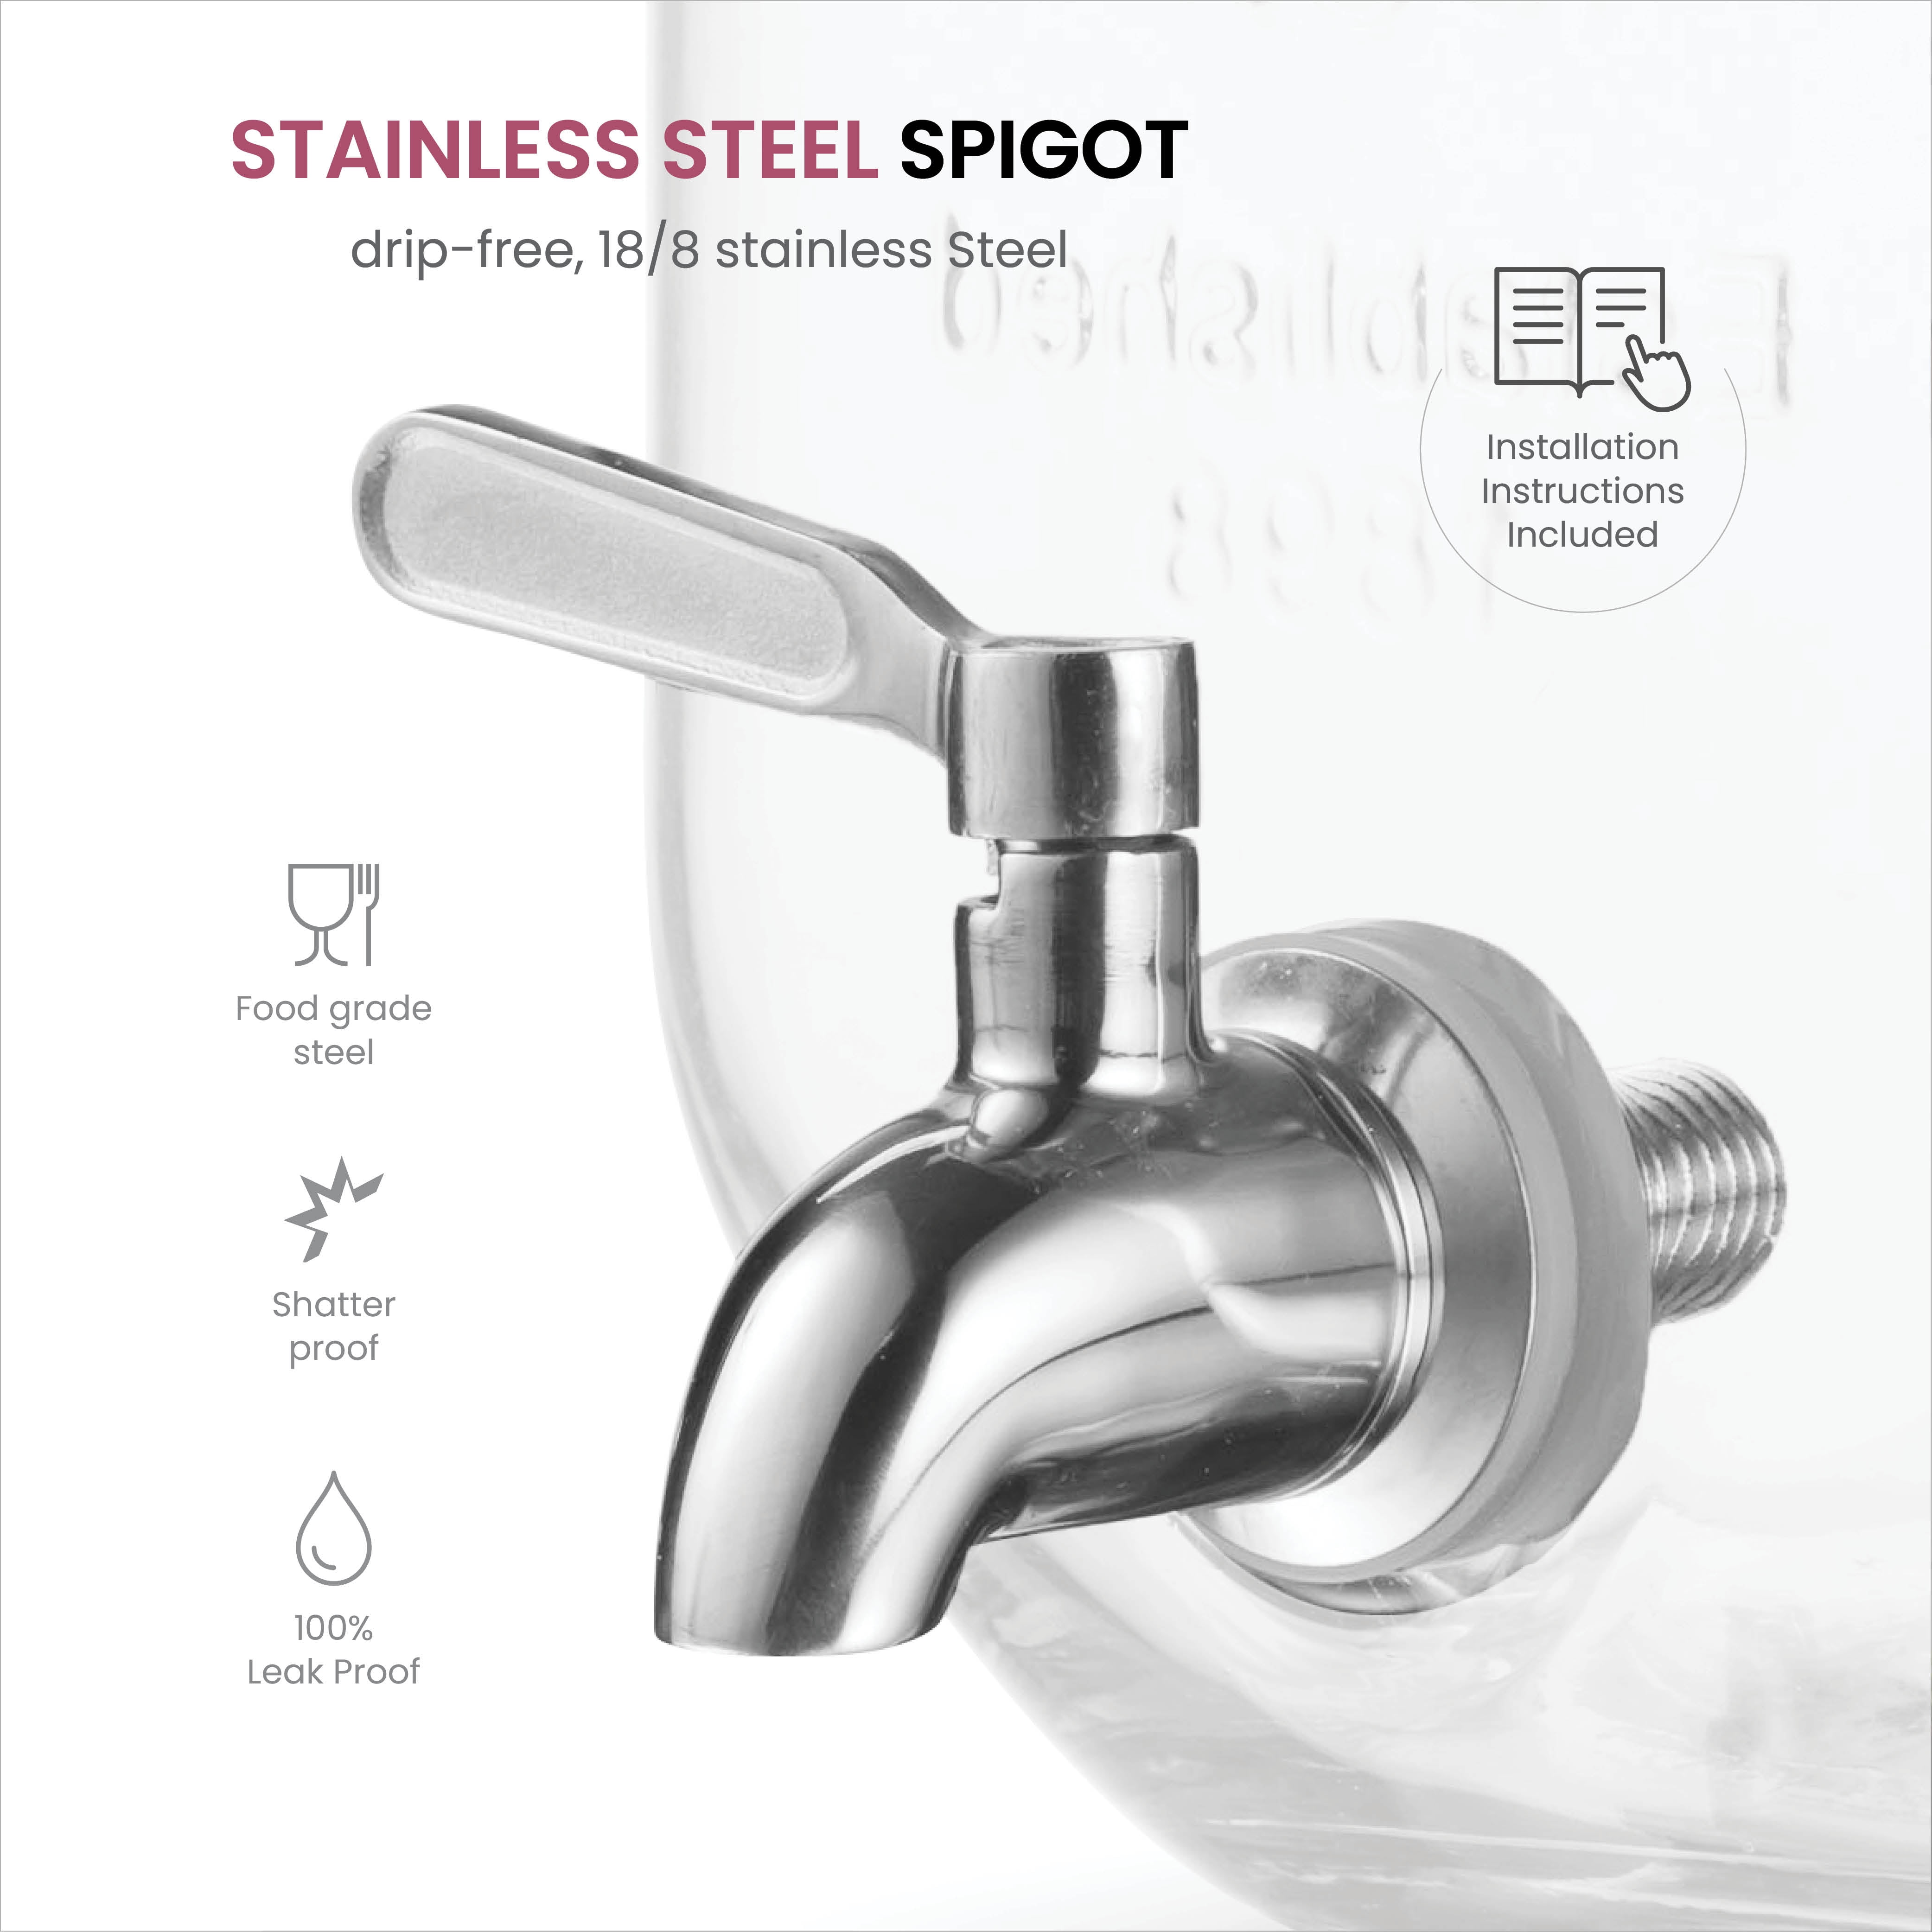 Glass Drink Dispenser for Fridge - 100% Leakproof Stainless Steel